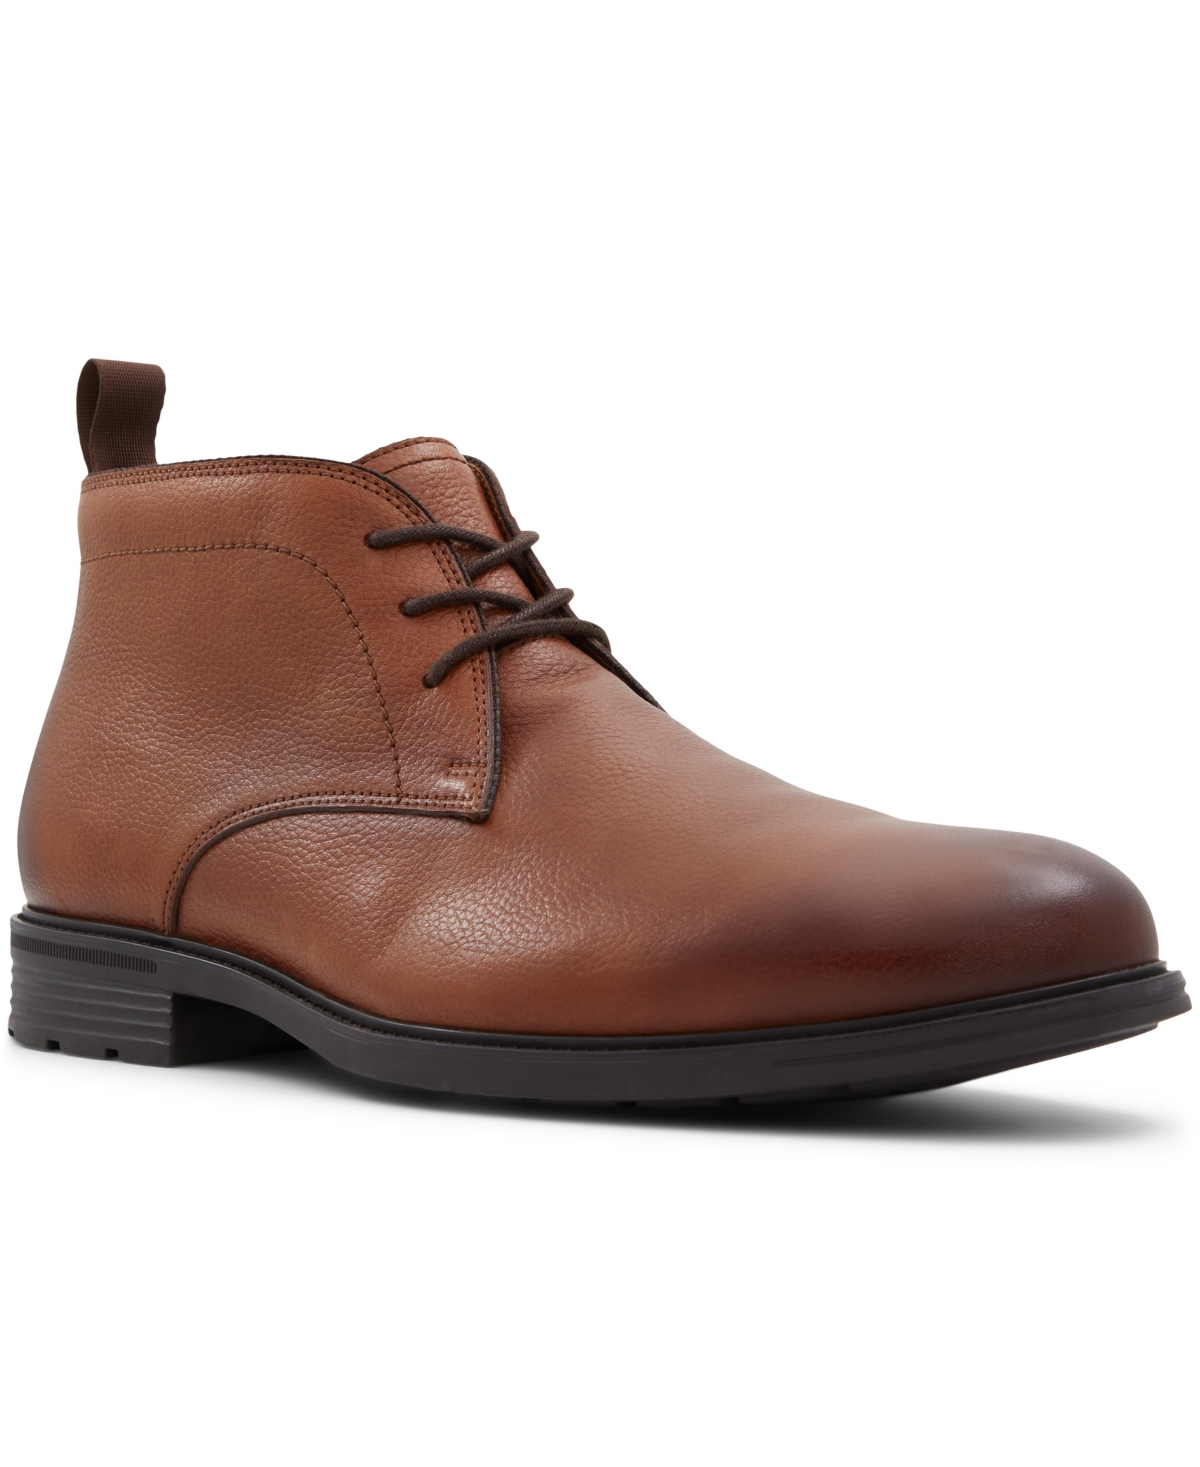 Men's Charleroi Ankle Lace-Up Boots - Cognac